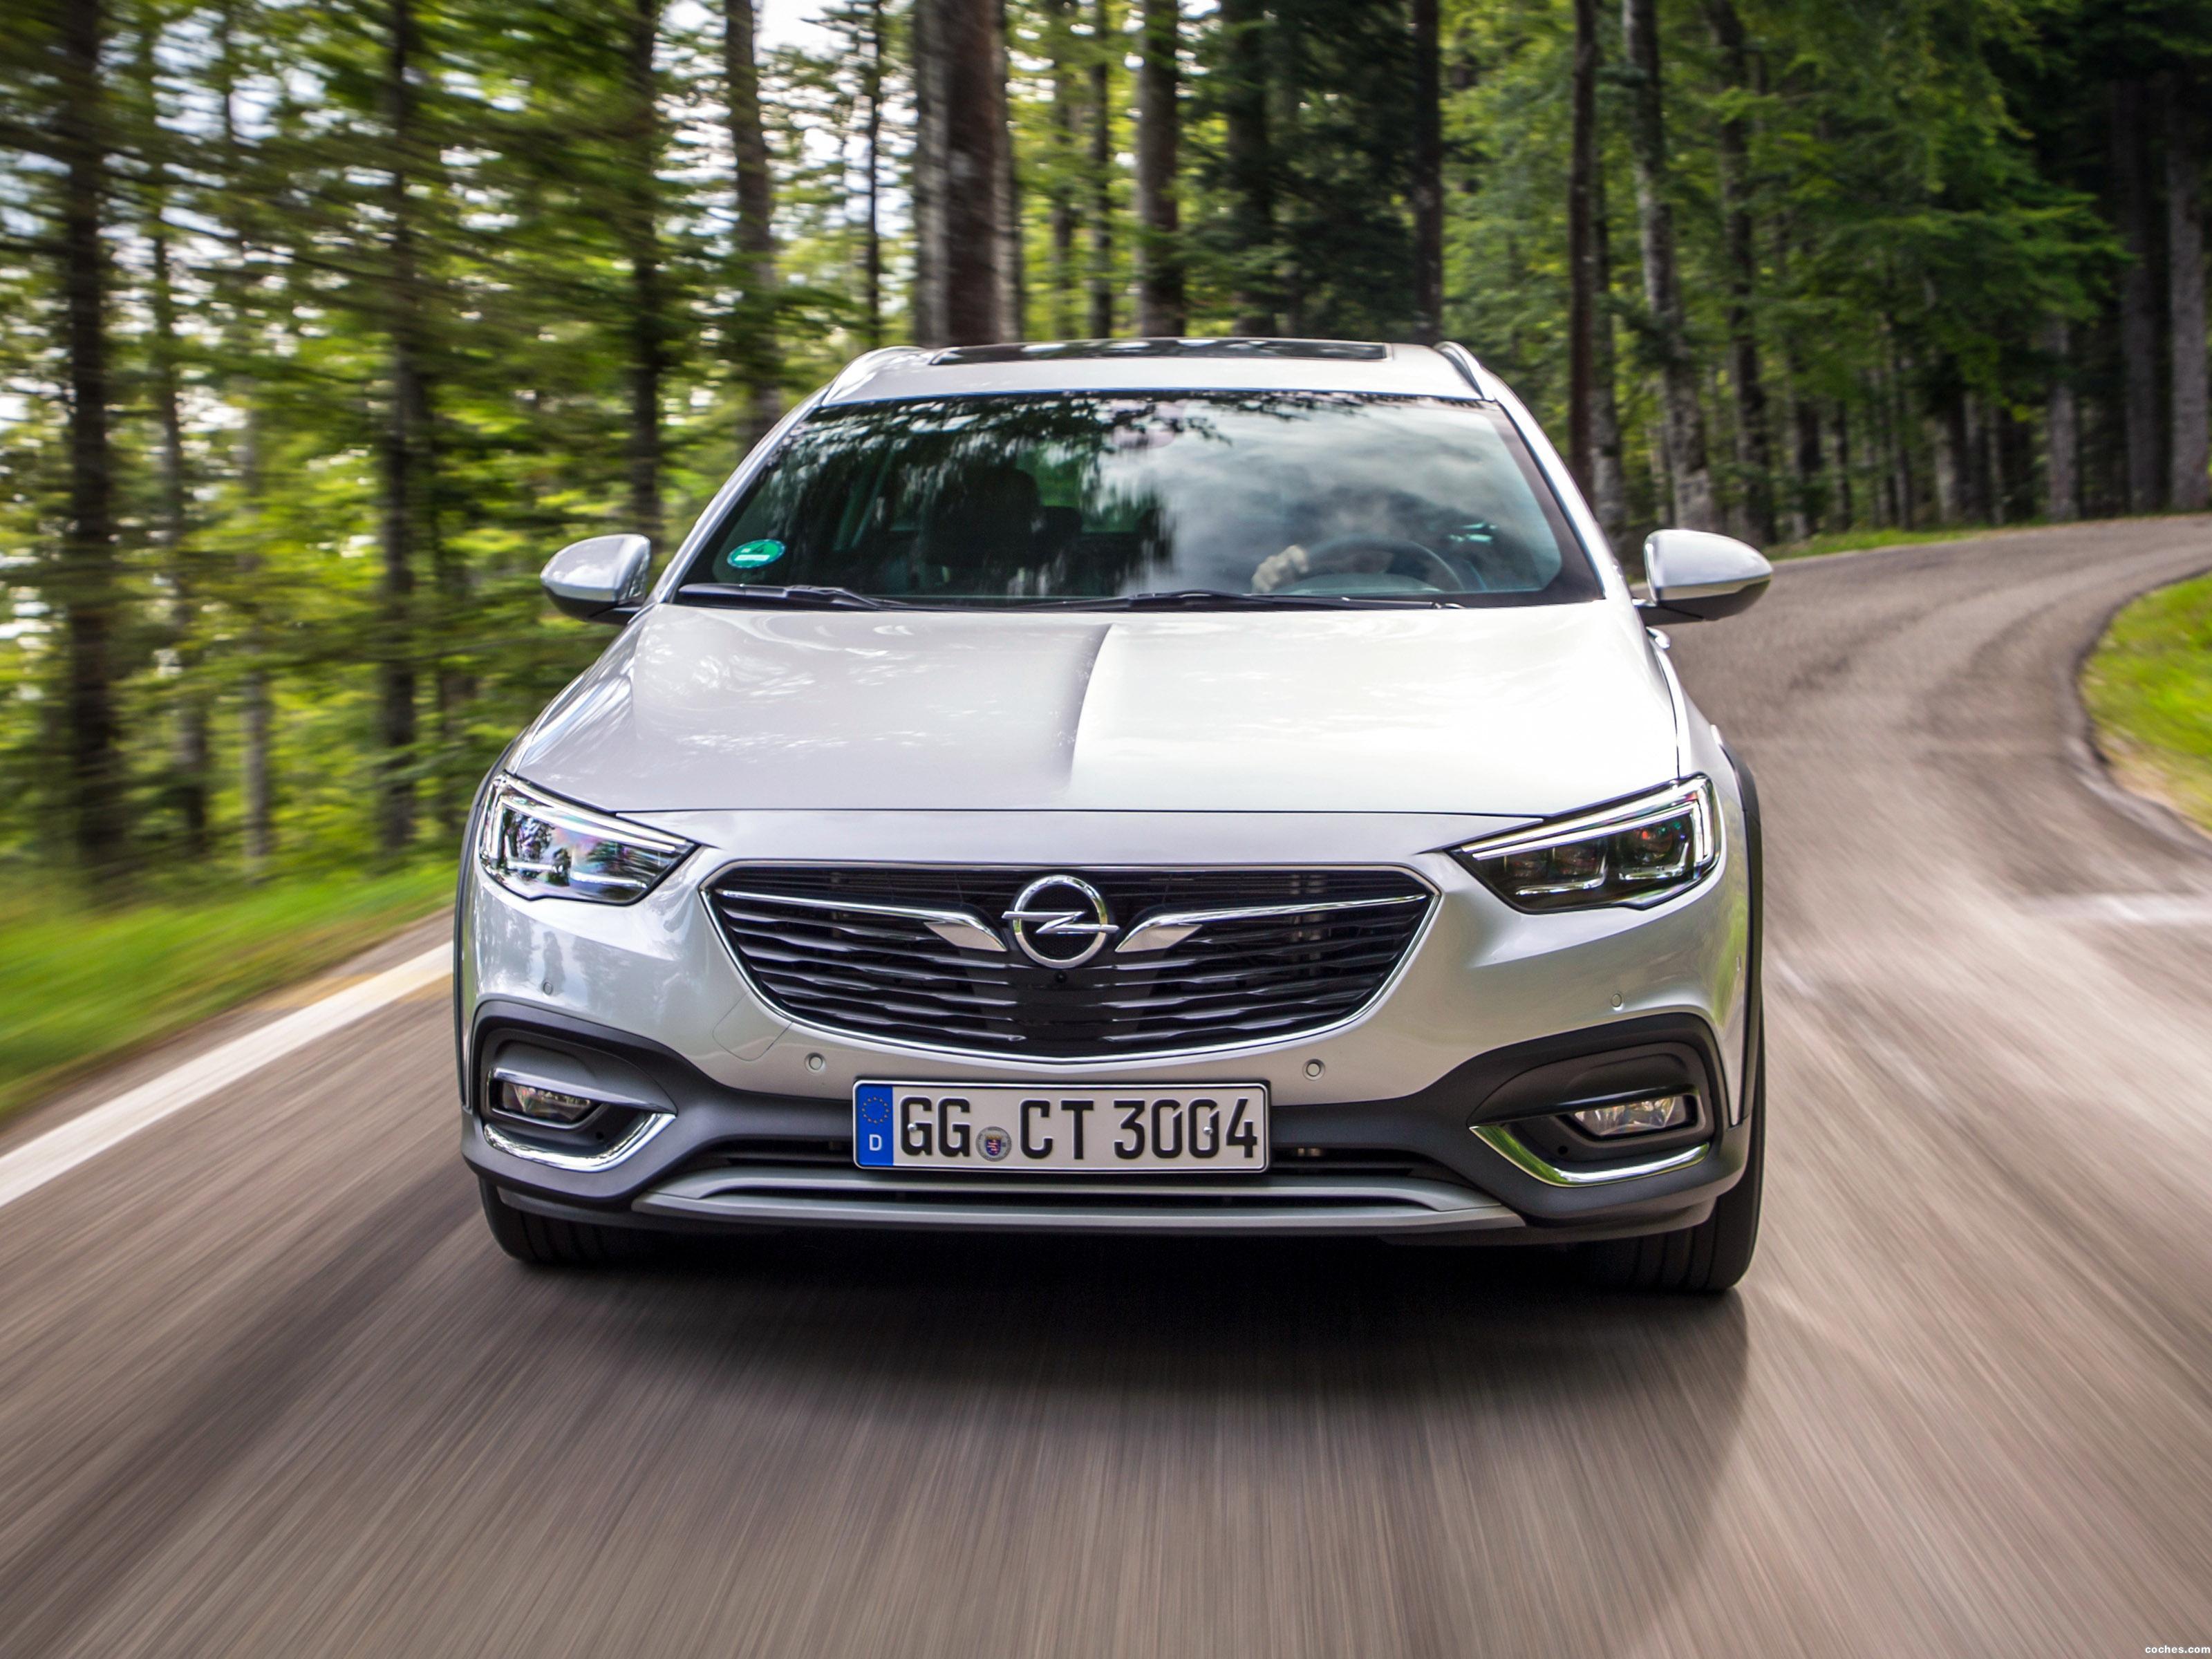 Opel Insignia Country Tourer interior model